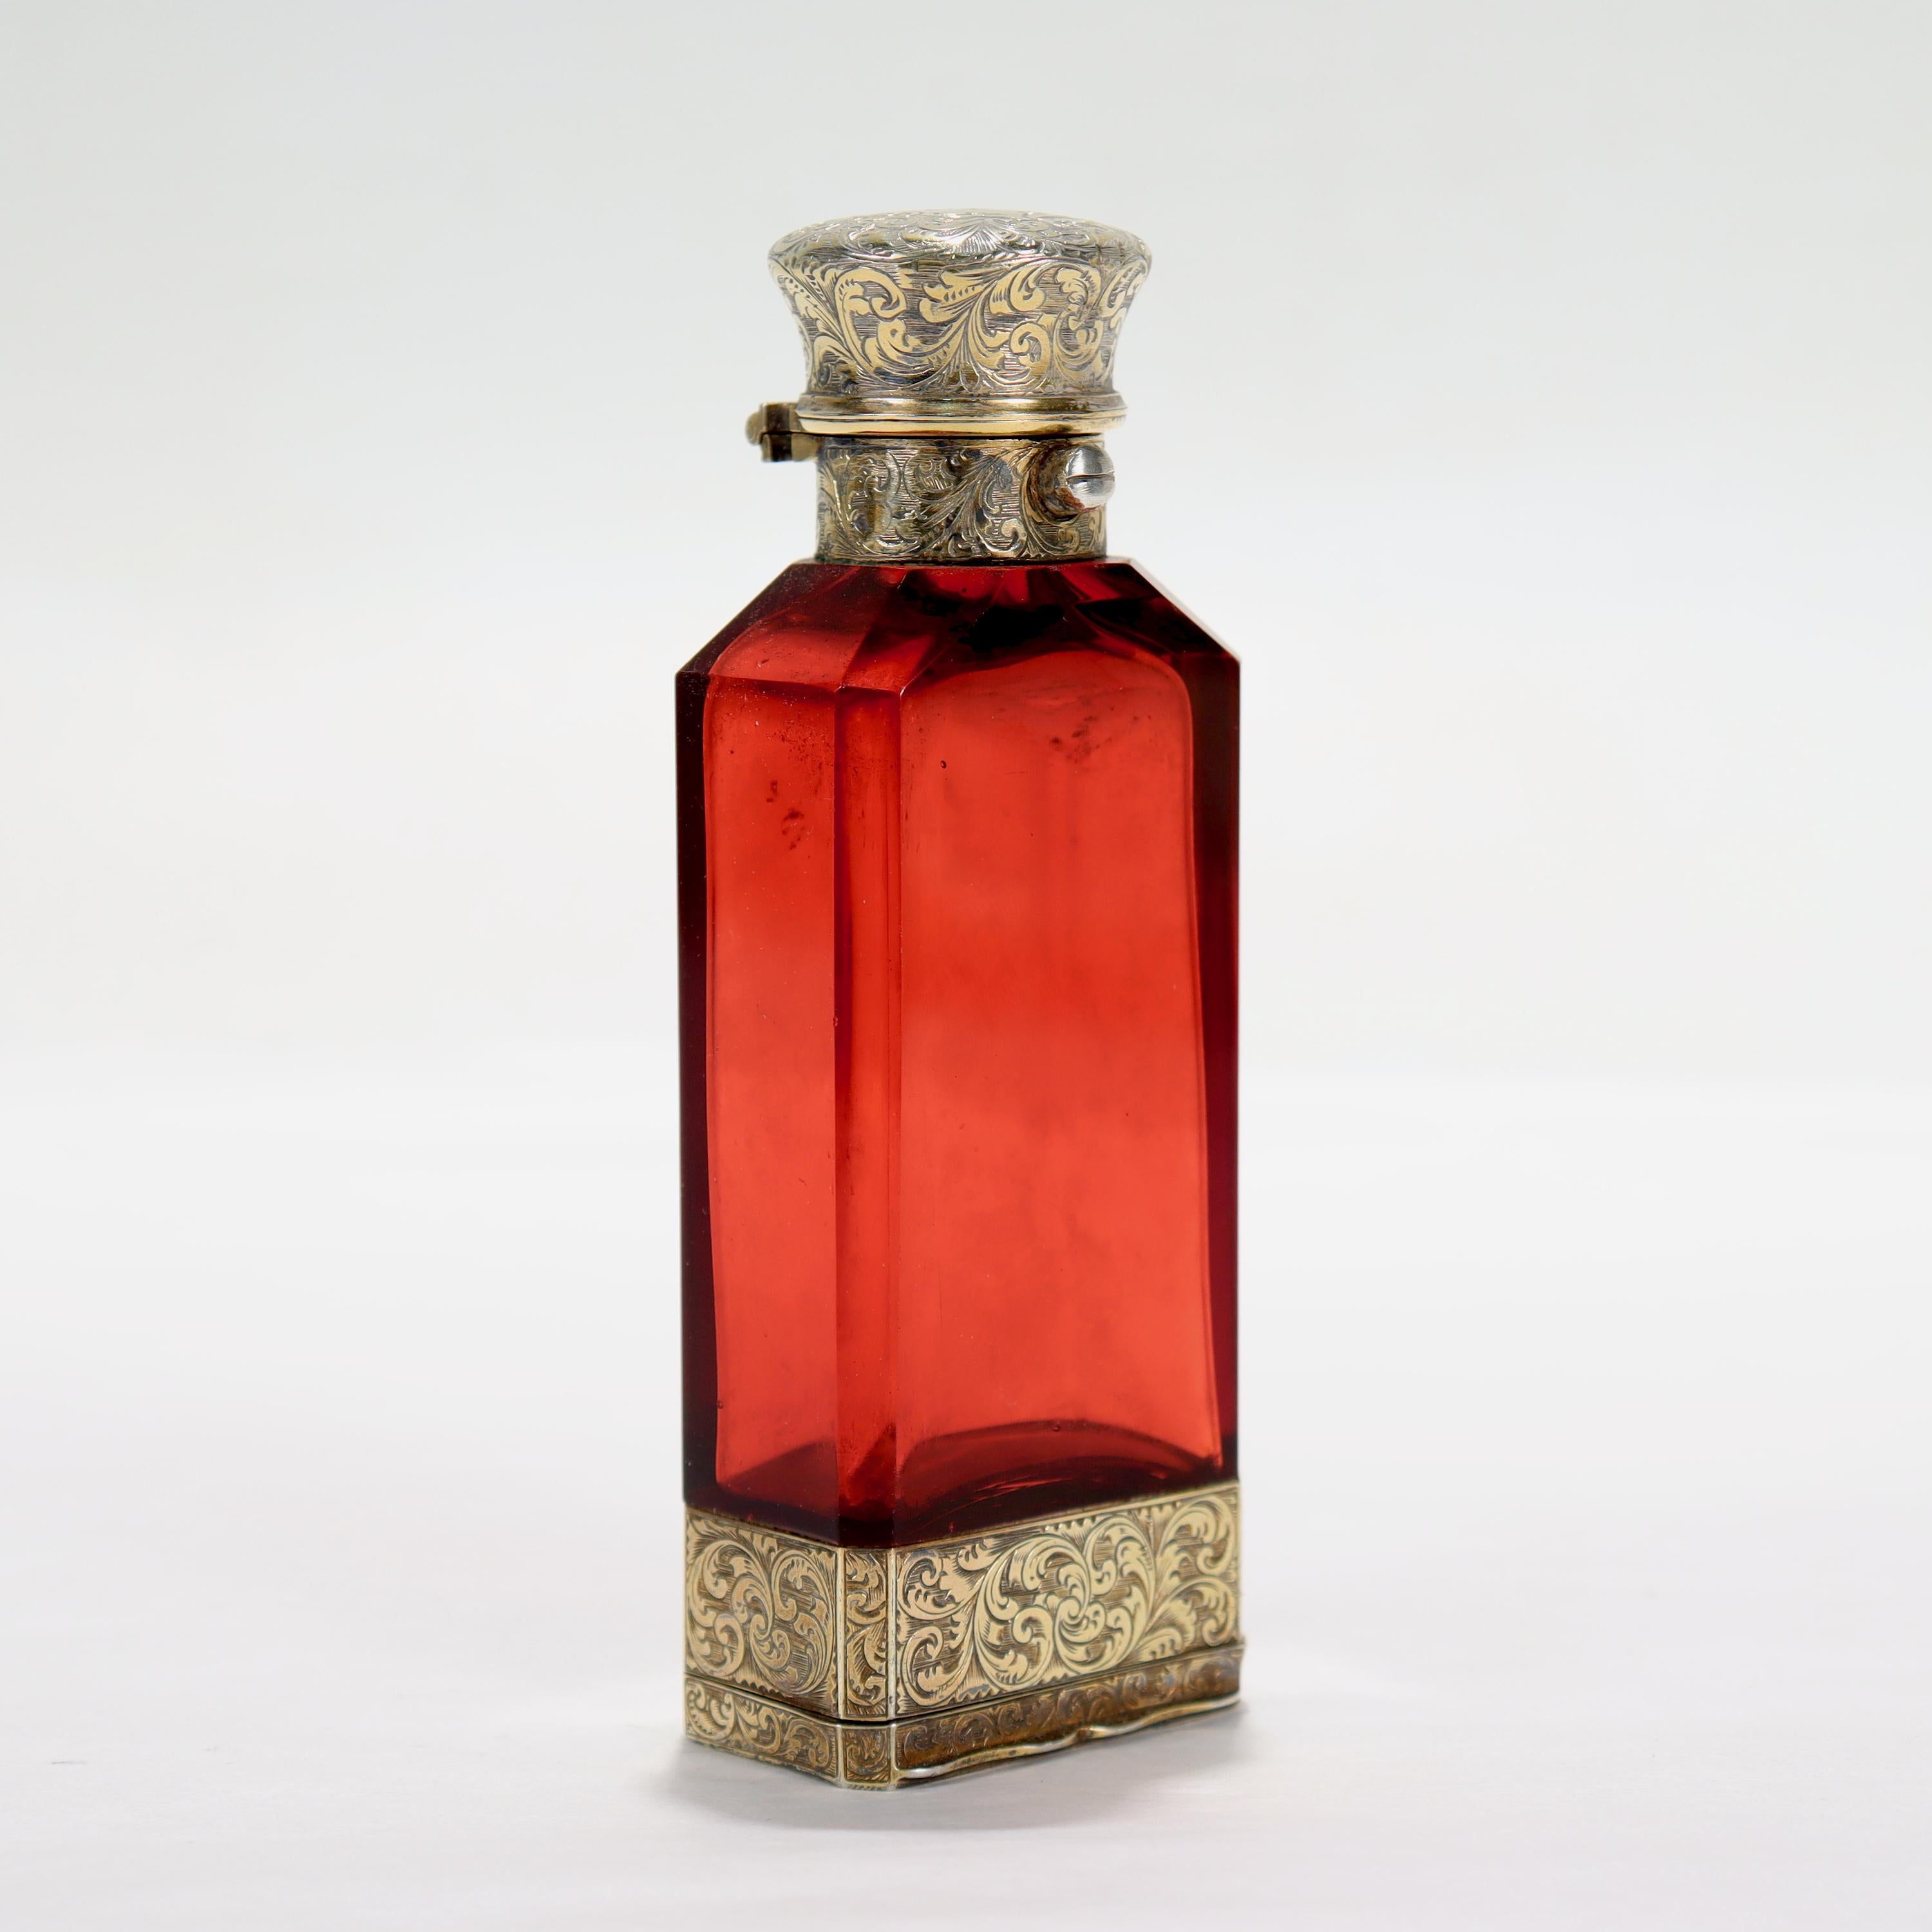 Eine feine antike viktorianische Glas & Sterling Silber Parfümflasche mit einer integrierten Vinaigrette.

Von Sampson Mordan

Mit einer facettierten Rubinglasflasche in geätzten, vergoldeten Silberfassungen mit integrierter Vinaigrette am